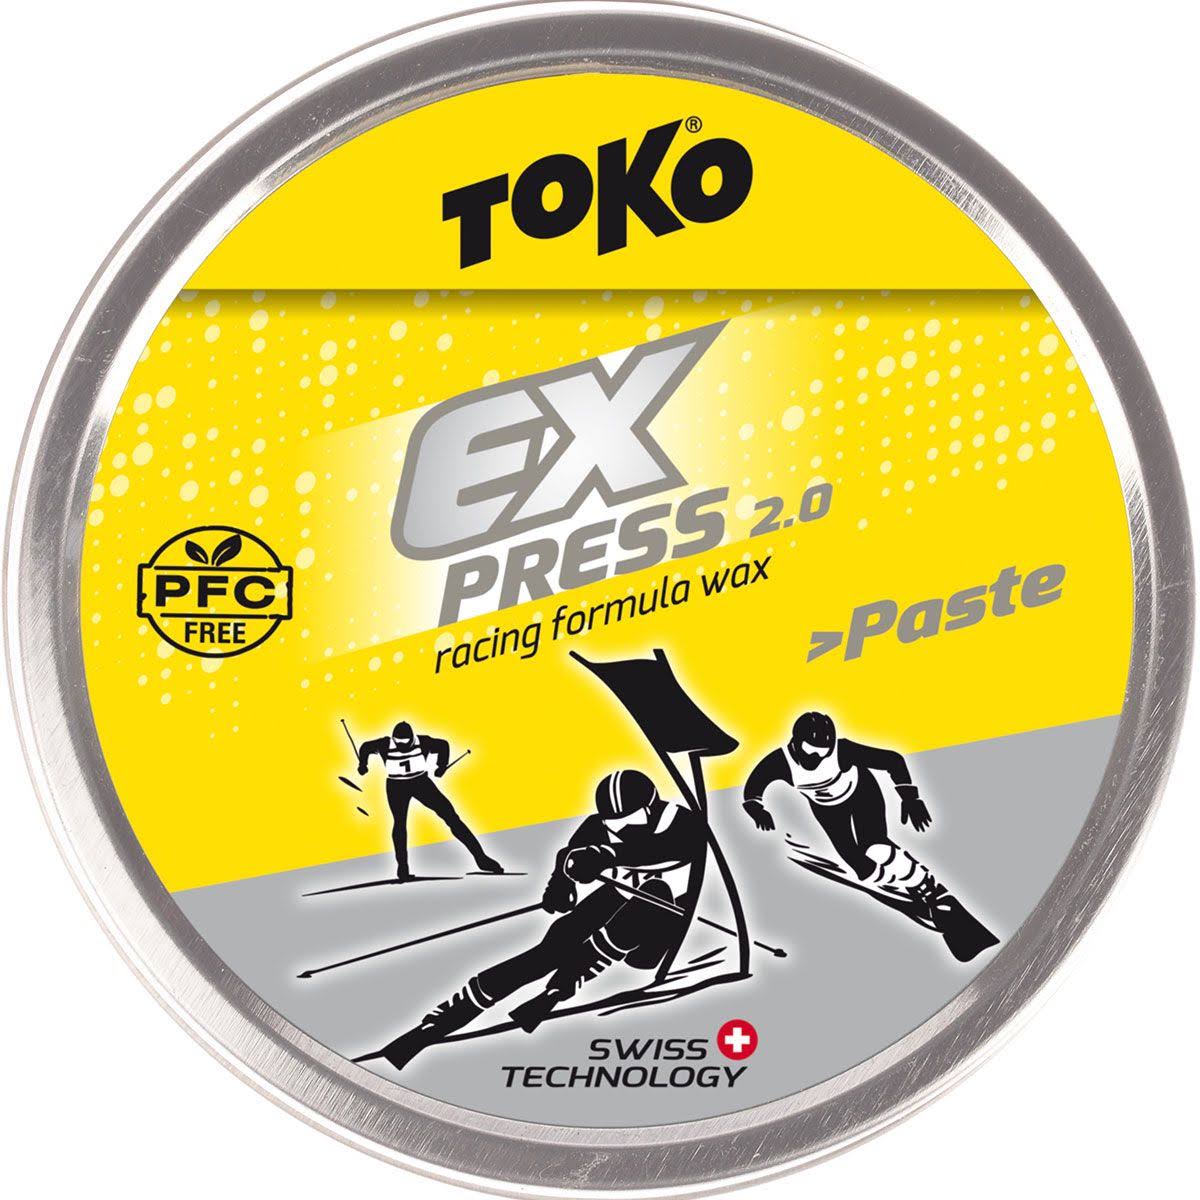 Toko Express Racing Wax Paste 50g